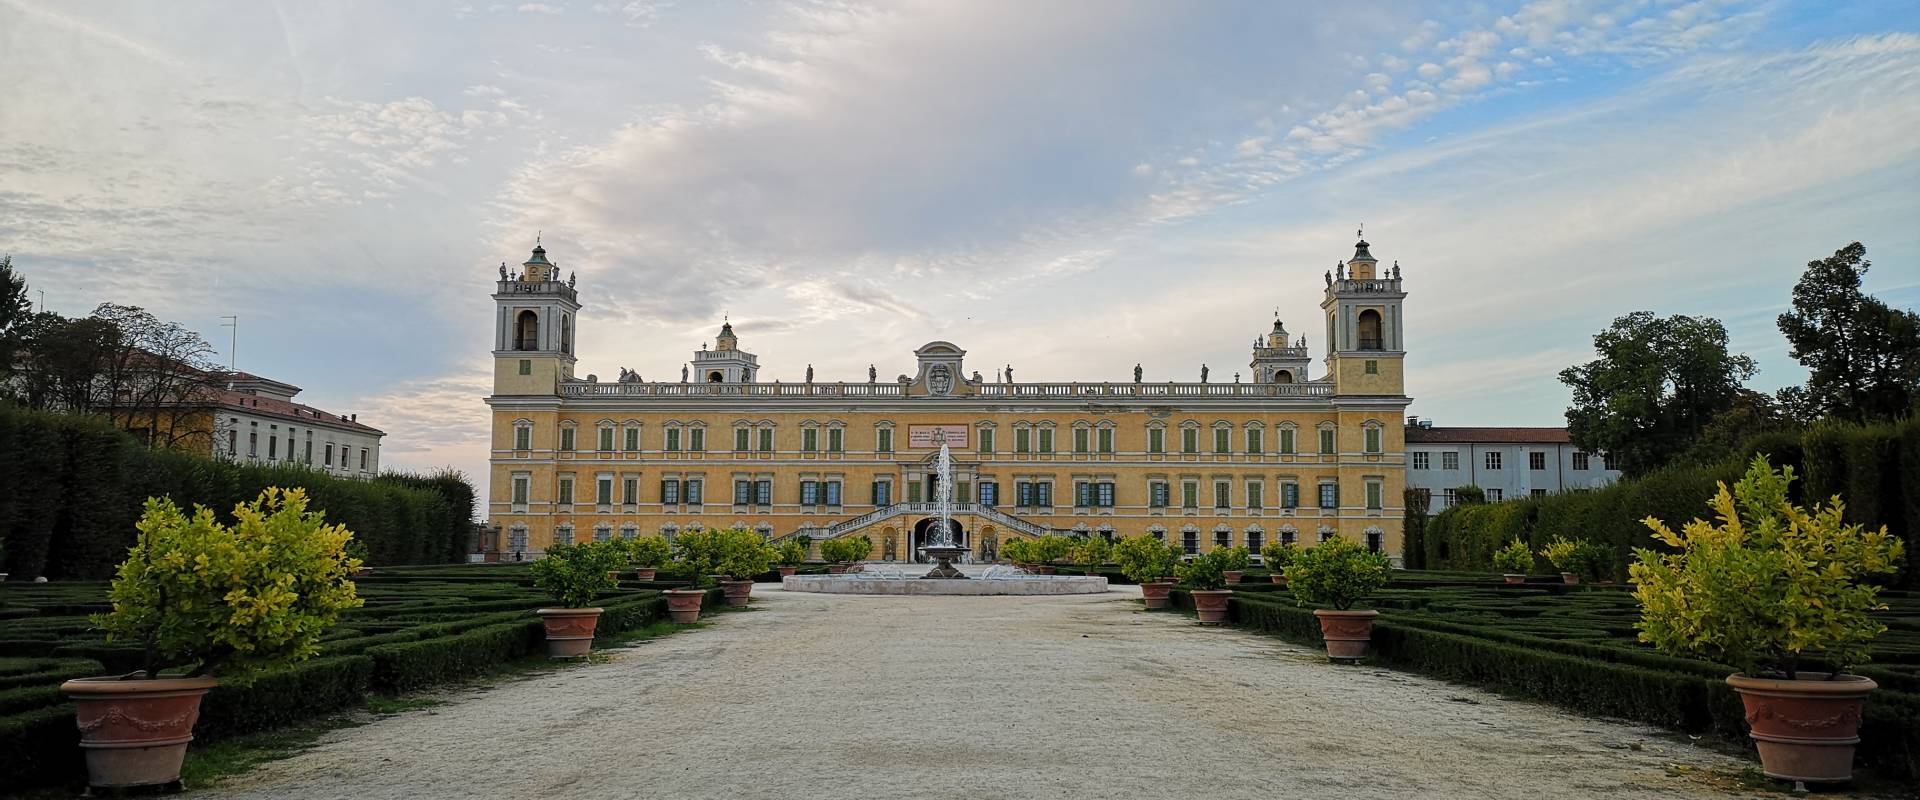 Palazzo Ducale a Colorno, facciata sud e giardini, 21-9-2019 photo by Fabrizio Marcheselli